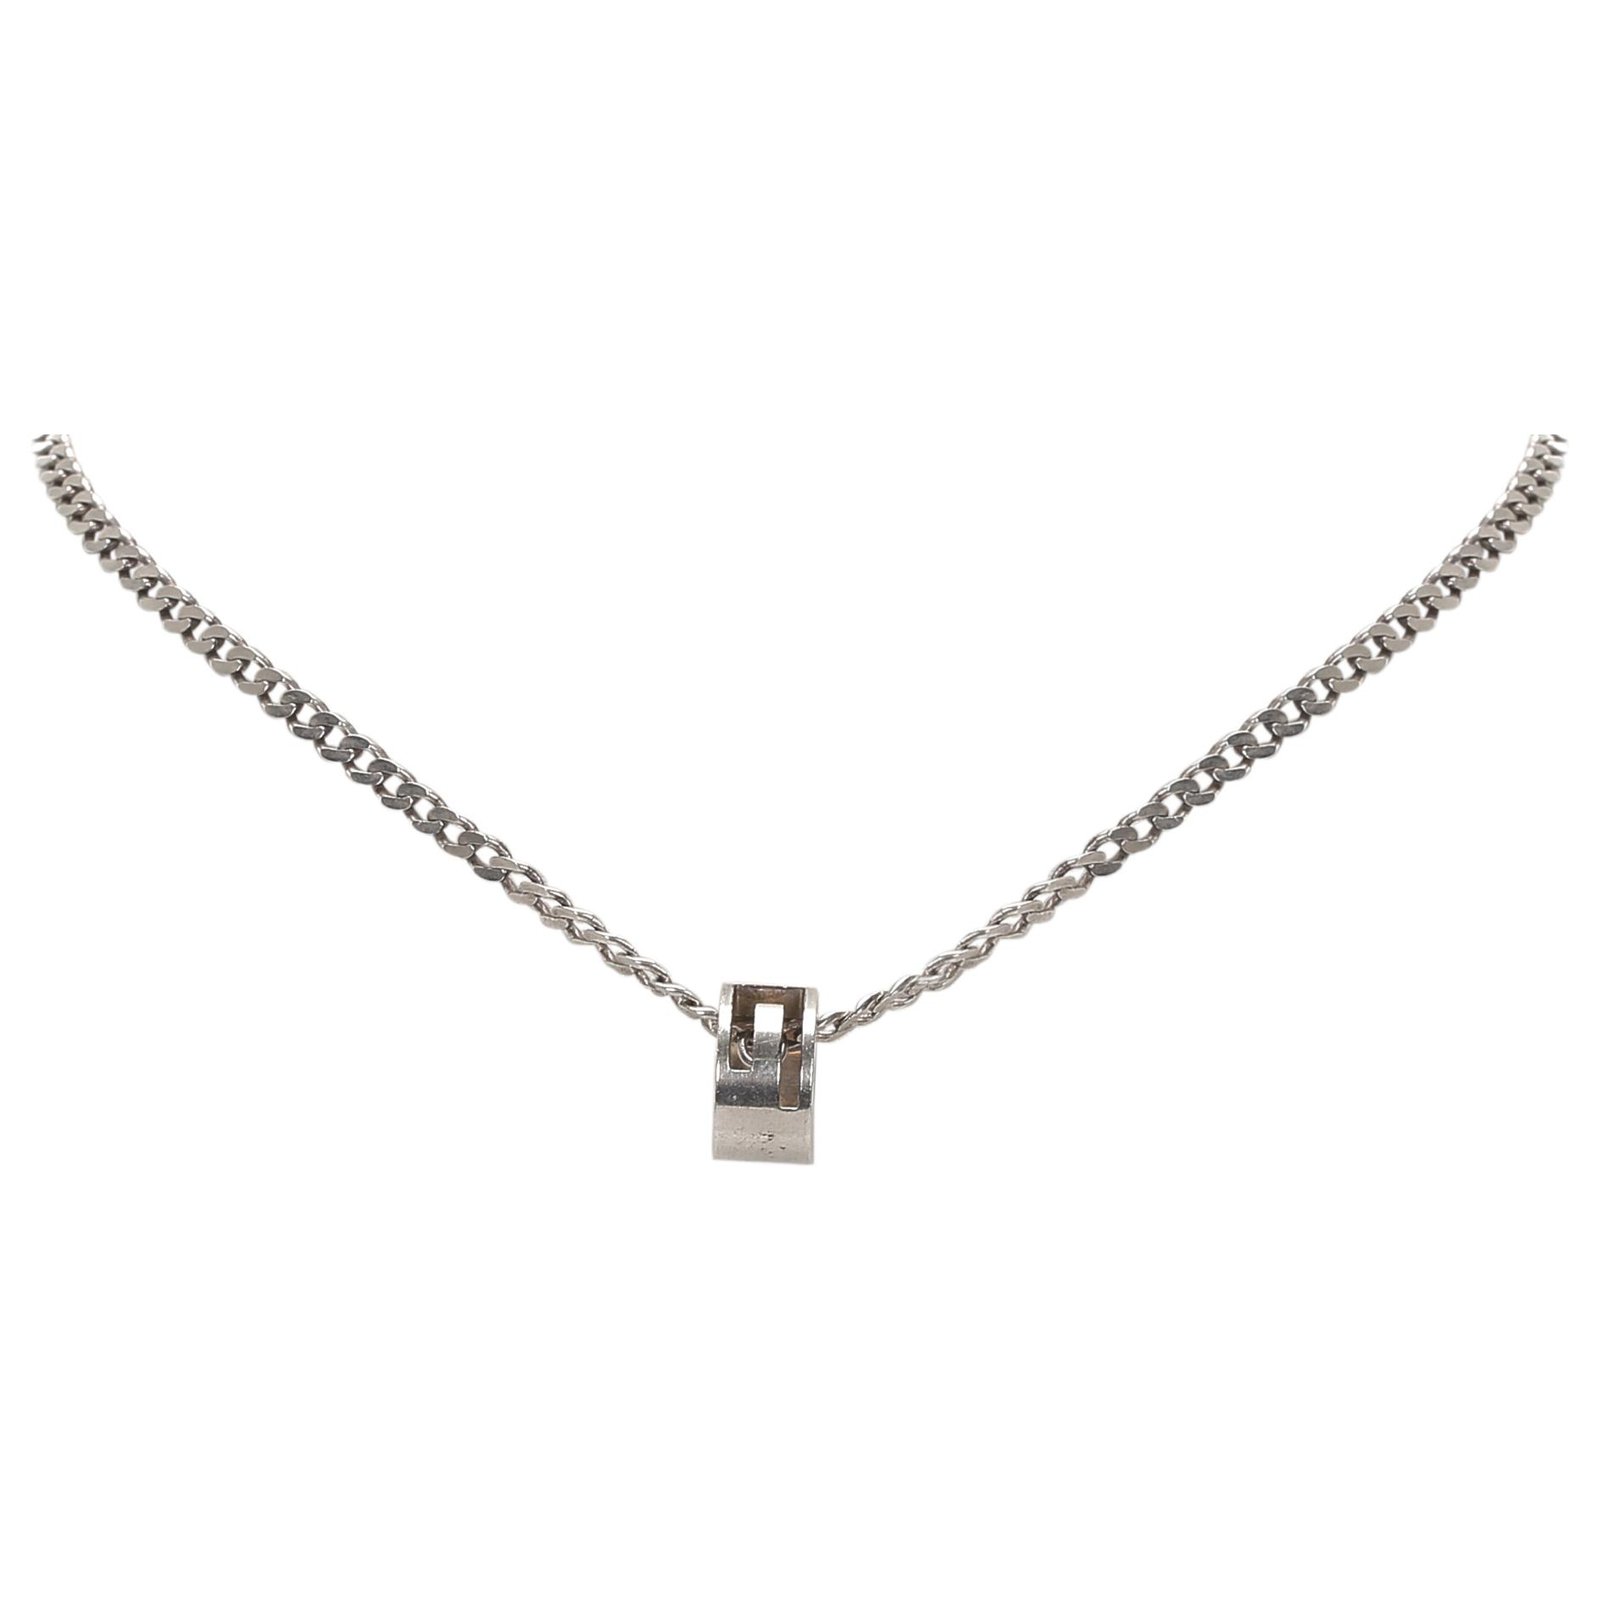 gucci silver necklace